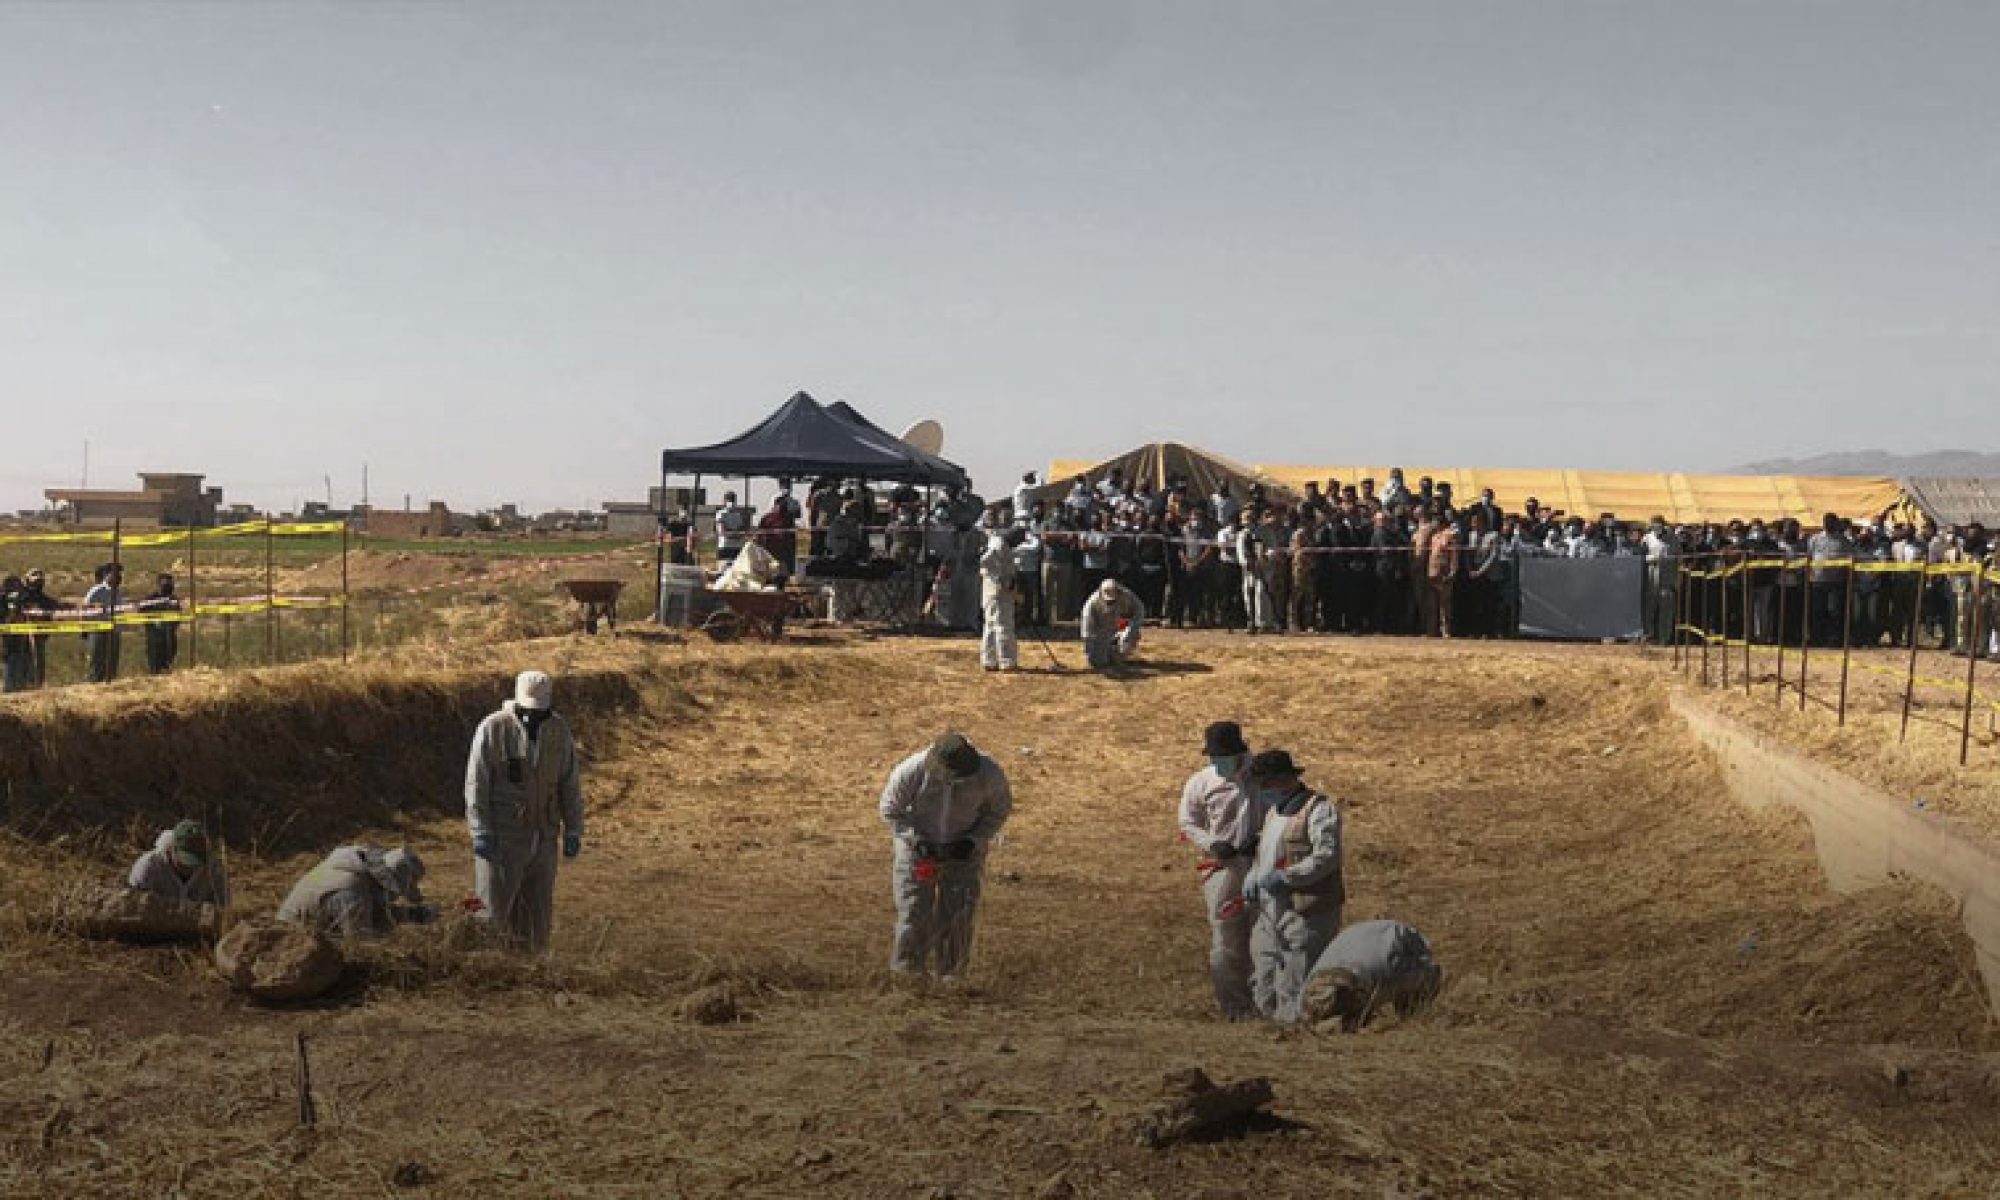 . Nadi Murat, IŞİDŞengal’de IŞiD tarafından katledilen 75 kadın cenazesinin bulunduğu toplu mezar açılıyor